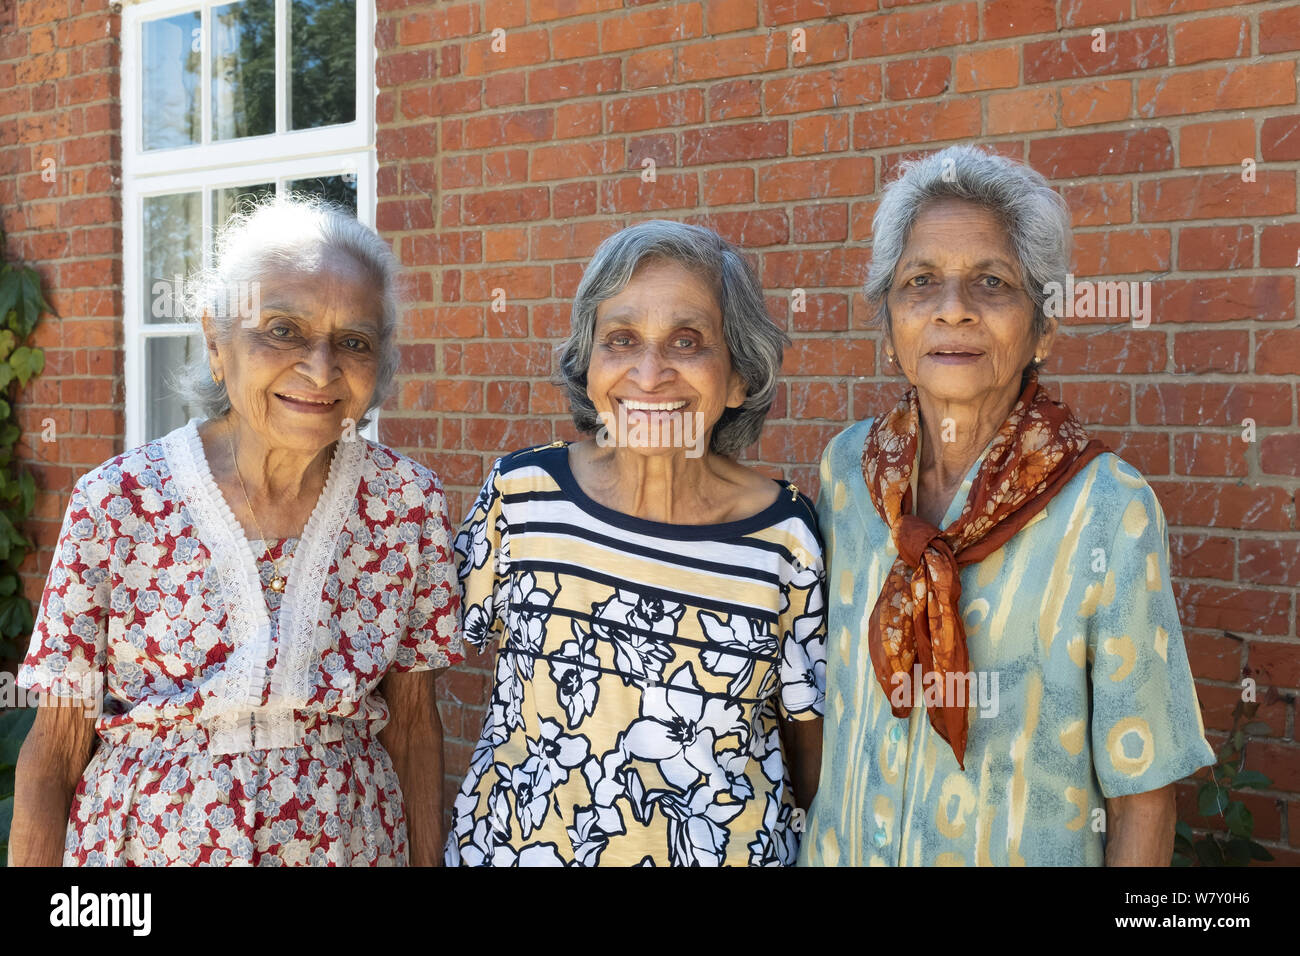 Buckingham, Großbritannien - 05.Juli 2019. Drei alte ältere indische Frauen (Schwestern, Geschwister) pose Lächeln für ein ehrliches Porträt an einer Wiedervereinigung in Großbritannien. Stockfoto